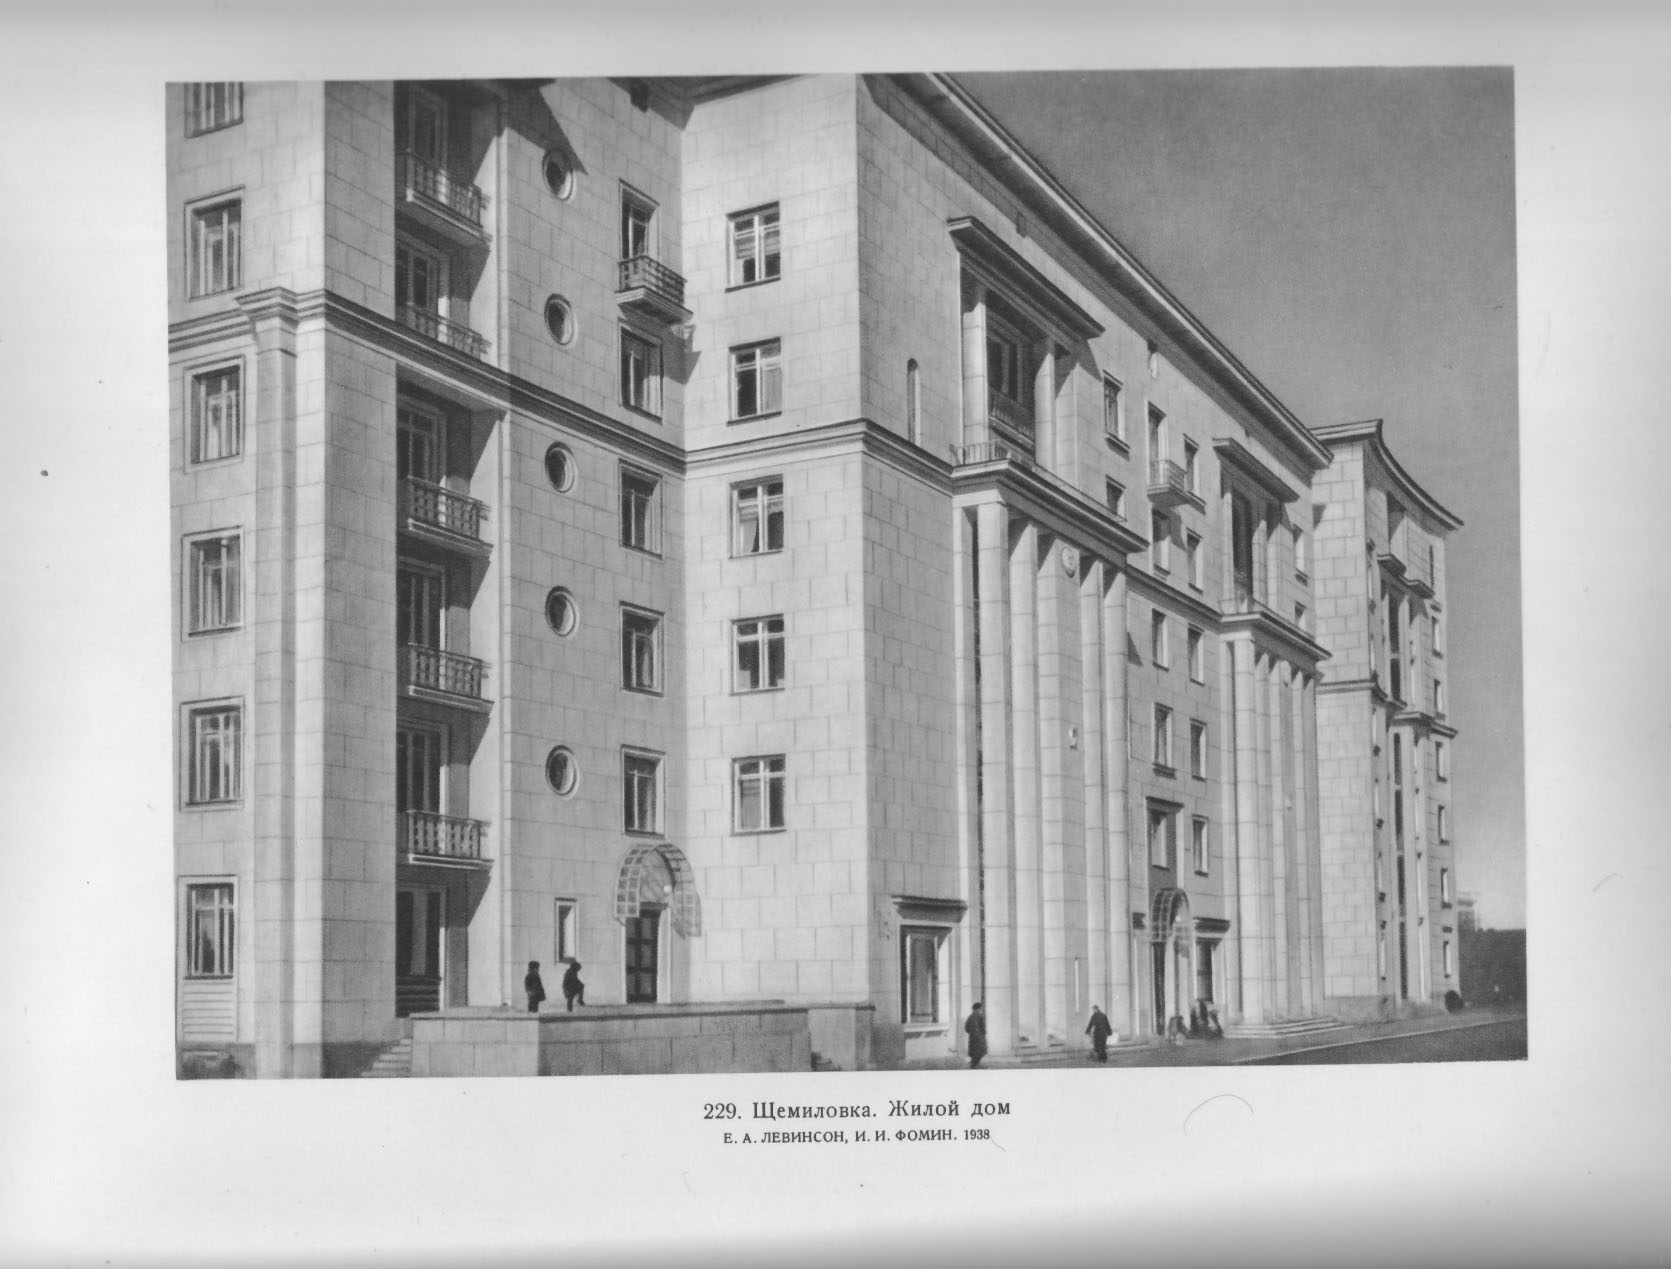 229. Щемиловка. Жилой дом. Е. А. Левинсон, И. И. Фомин. 1938